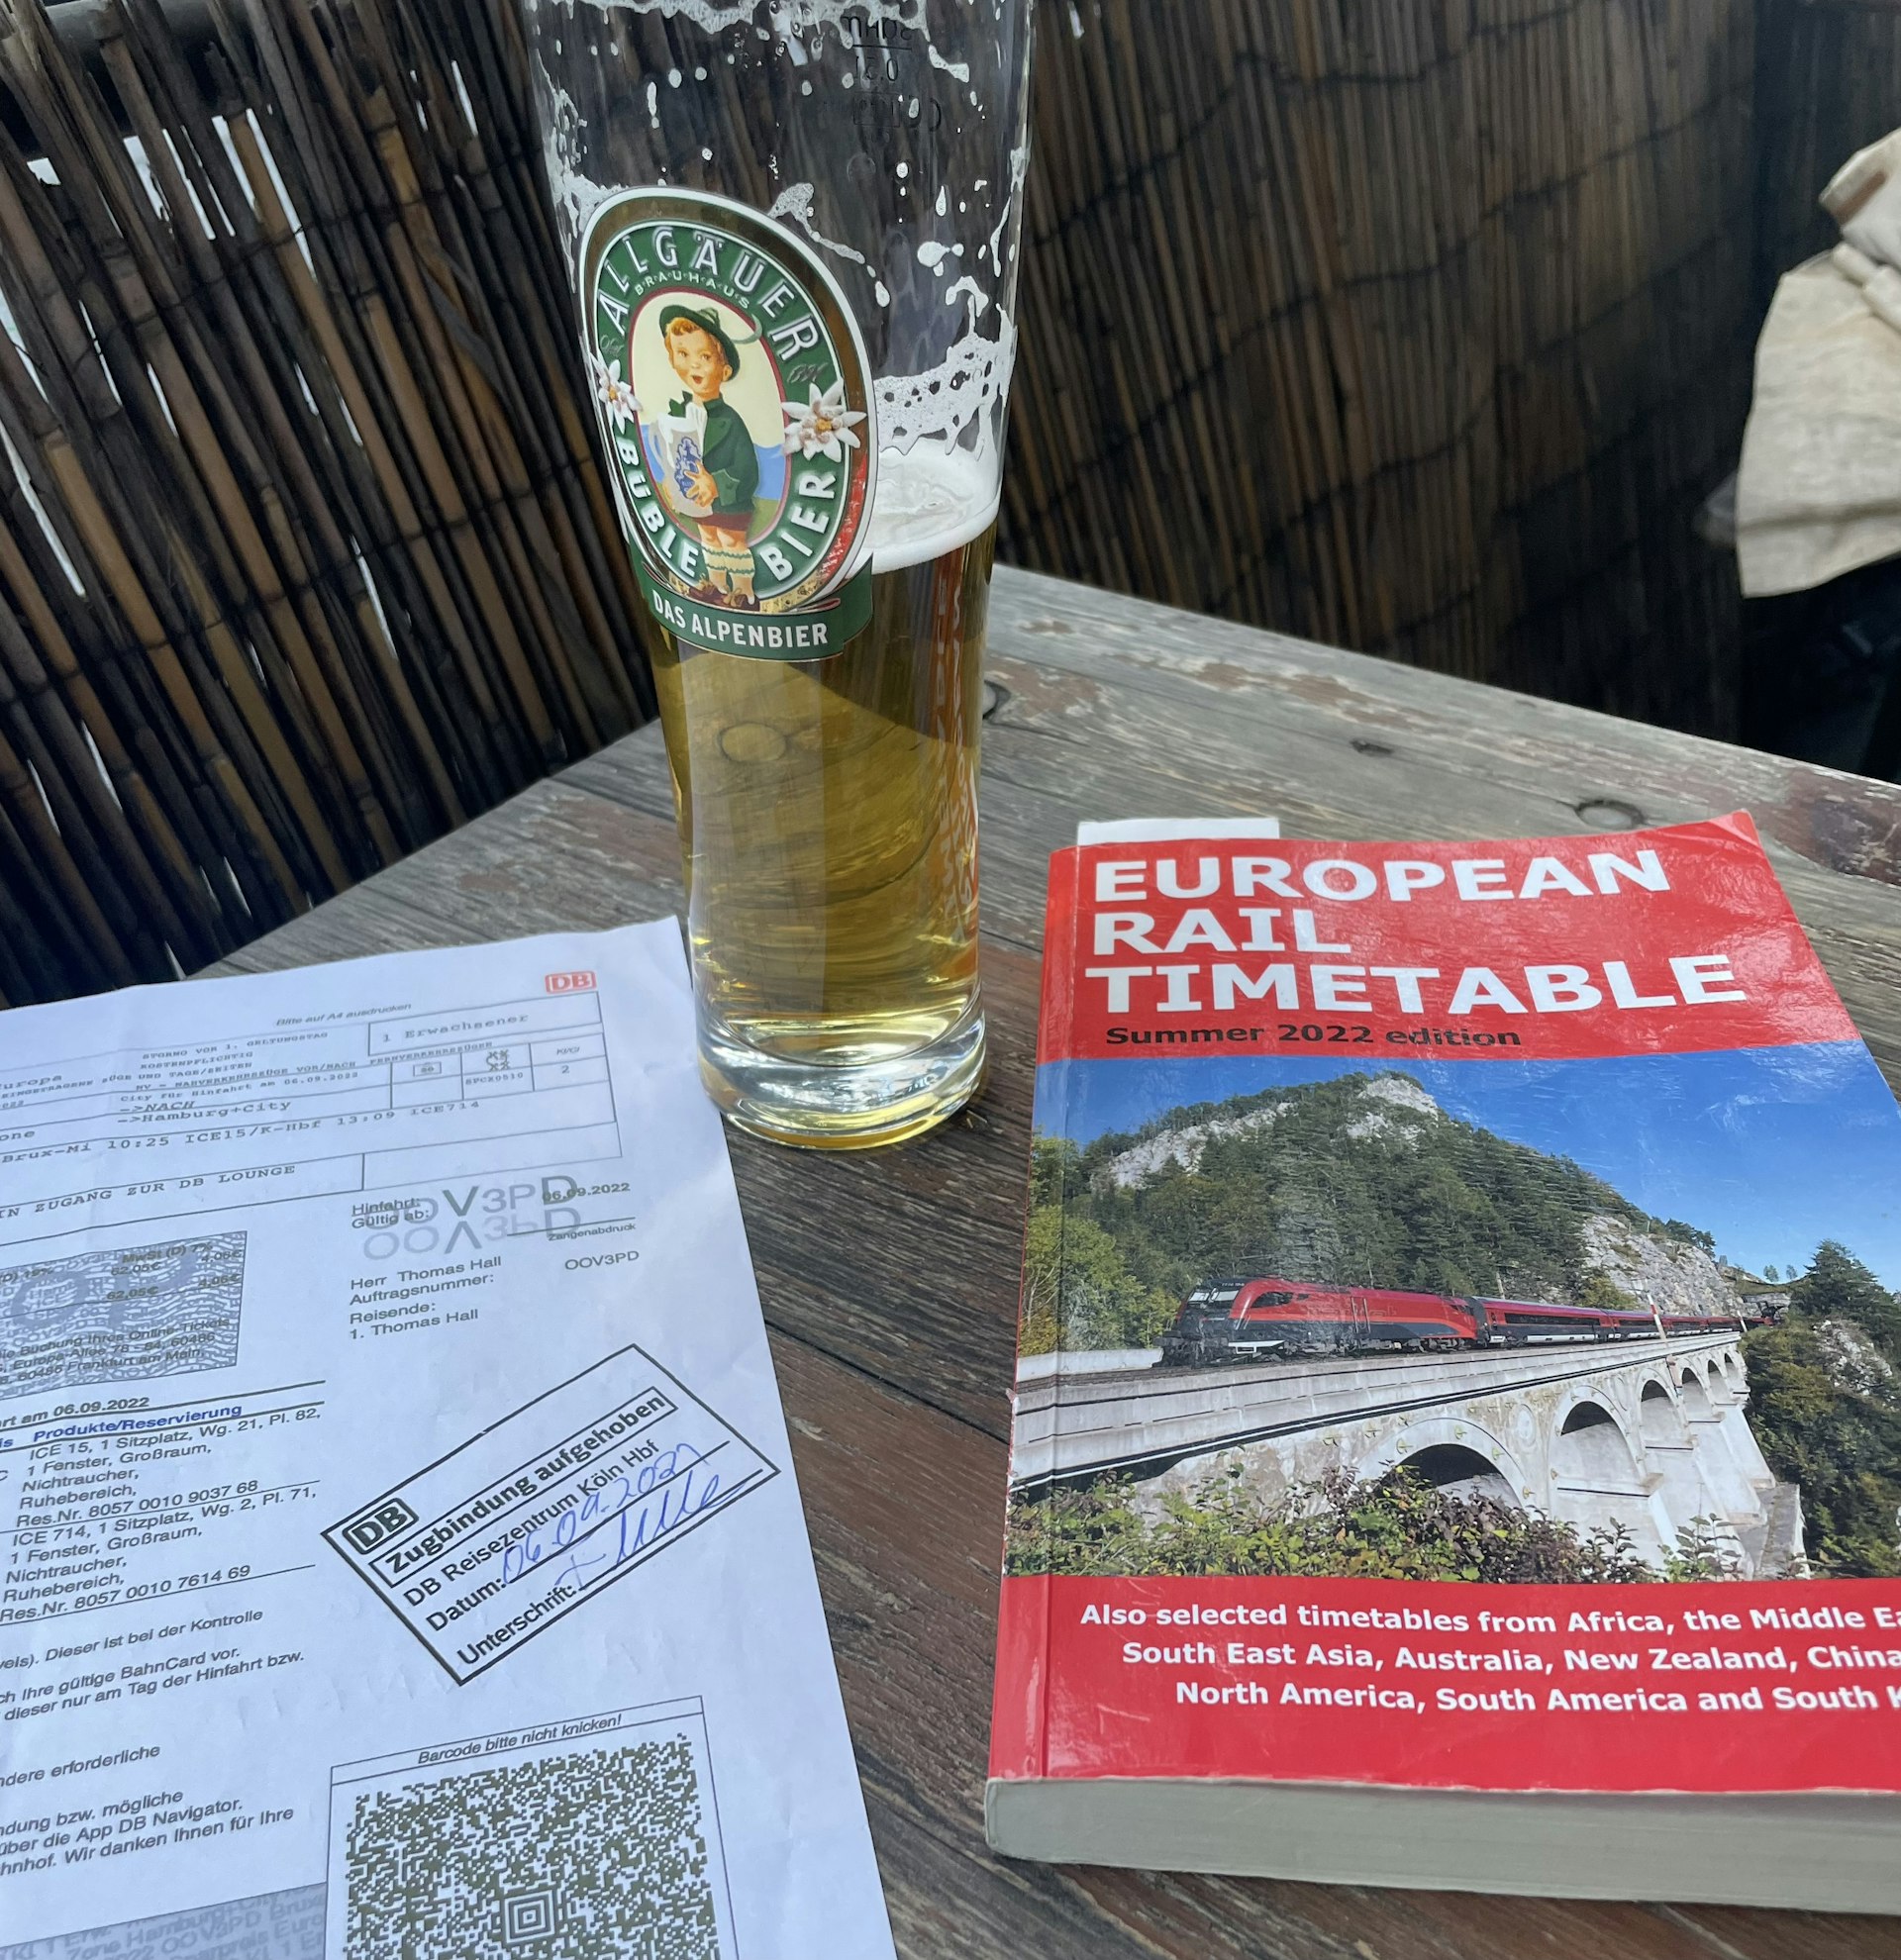 Reading up over a beer in Altona, Hamburg, Germany